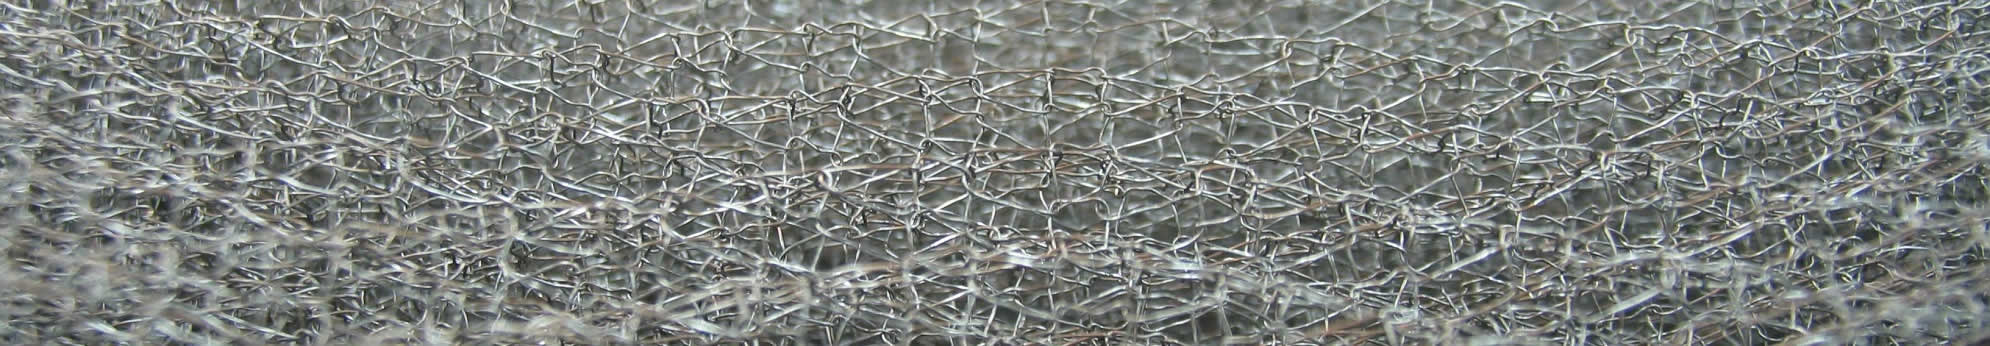 Filtre tricot métallique à maille en galva ou inox